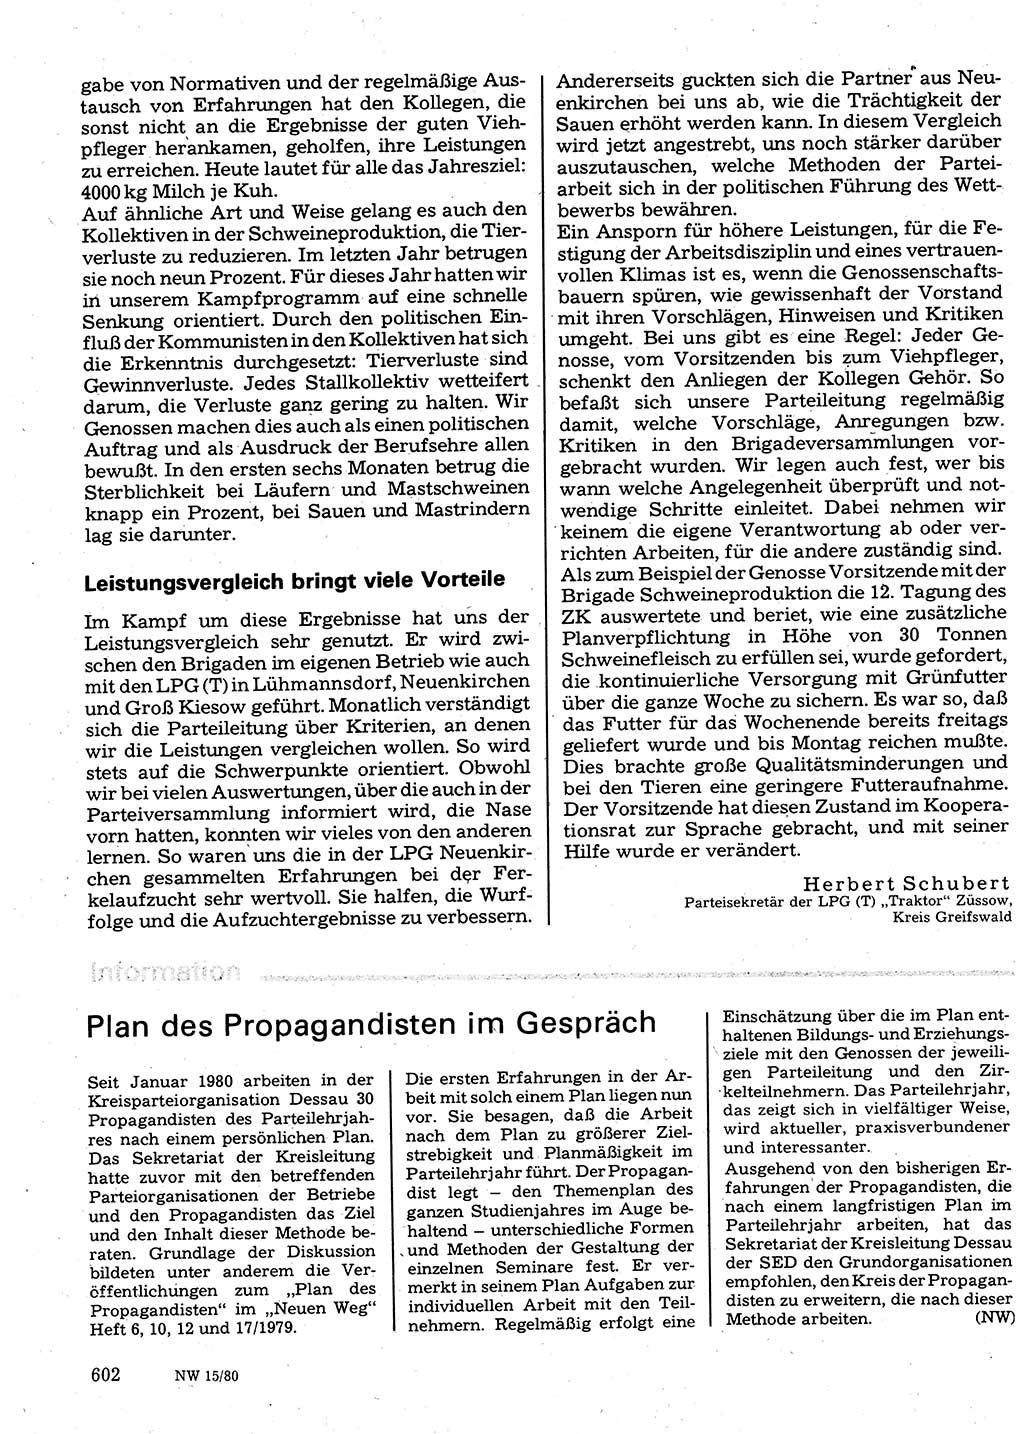 Neuer Weg (NW), Organ des Zentralkomitees (ZK) der SED (Sozialistische Einheitspartei Deutschlands) für Fragen des Parteilebens, 35. Jahrgang [Deutsche Demokratische Republik (DDR)] 1980, Seite 602 (NW ZK SED DDR 1980, S. 602)